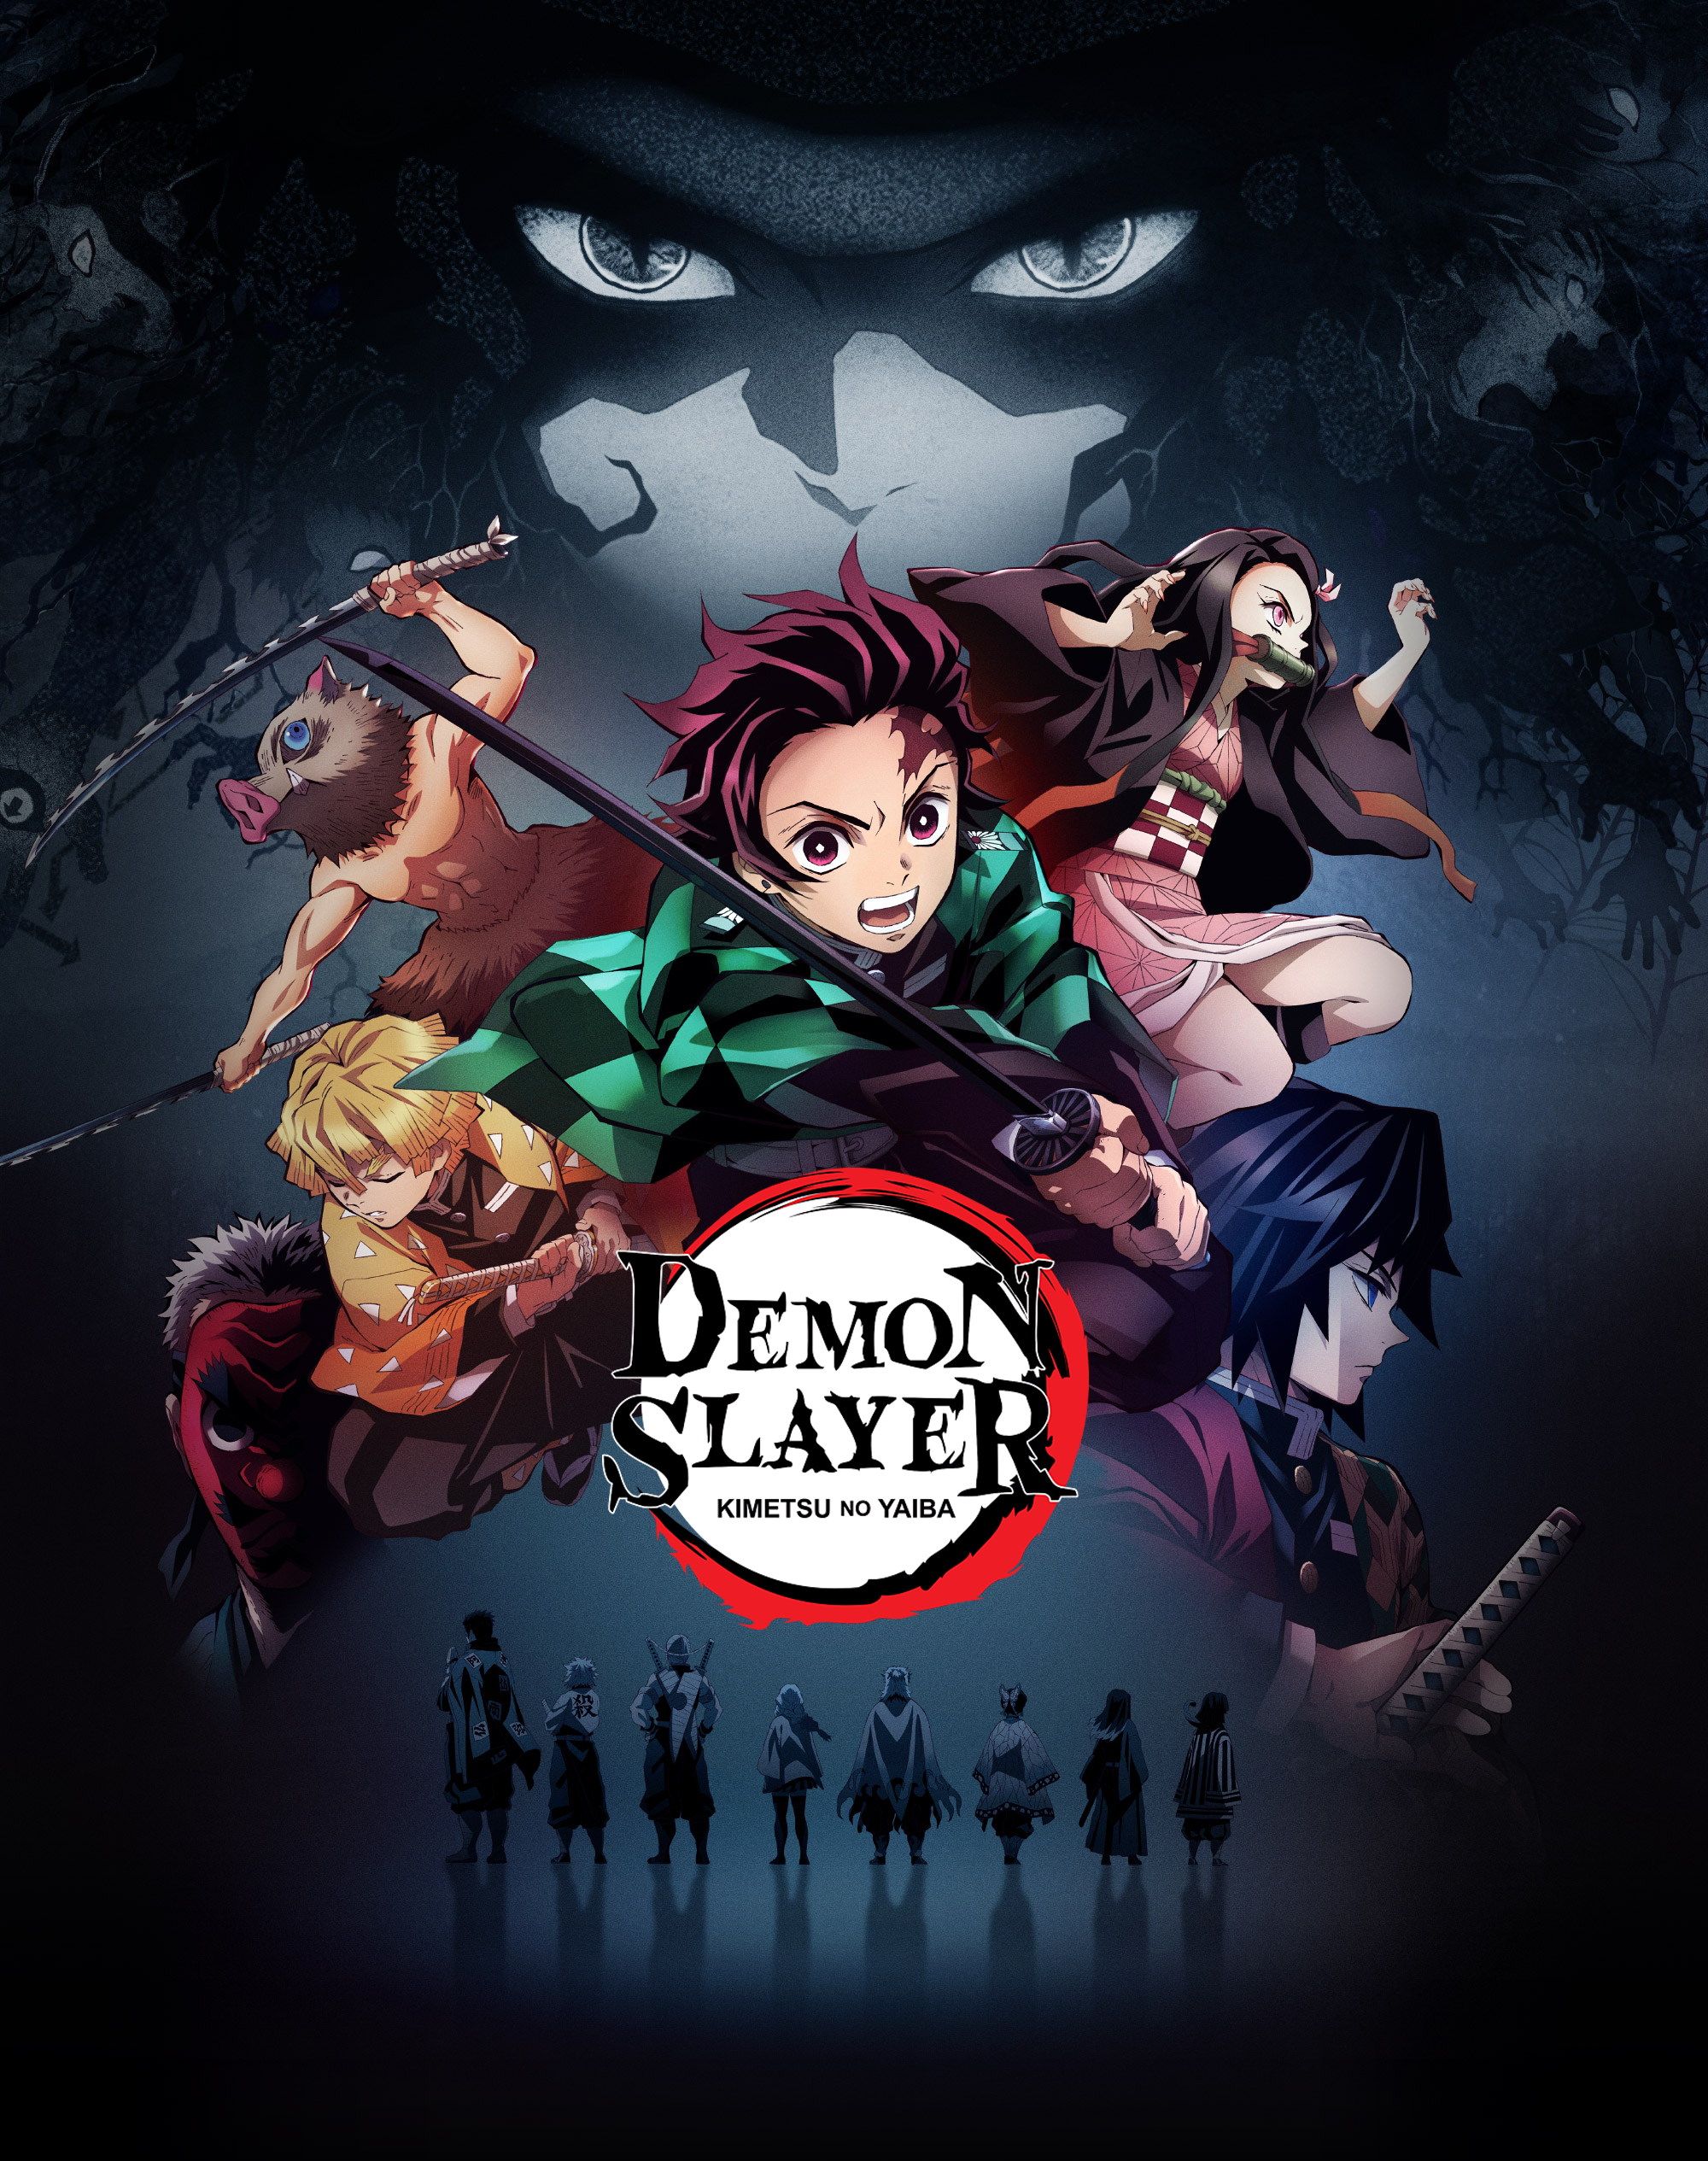 Demon Slayer: Kimetsu no Yaiba - The English dub of Episode 11 of